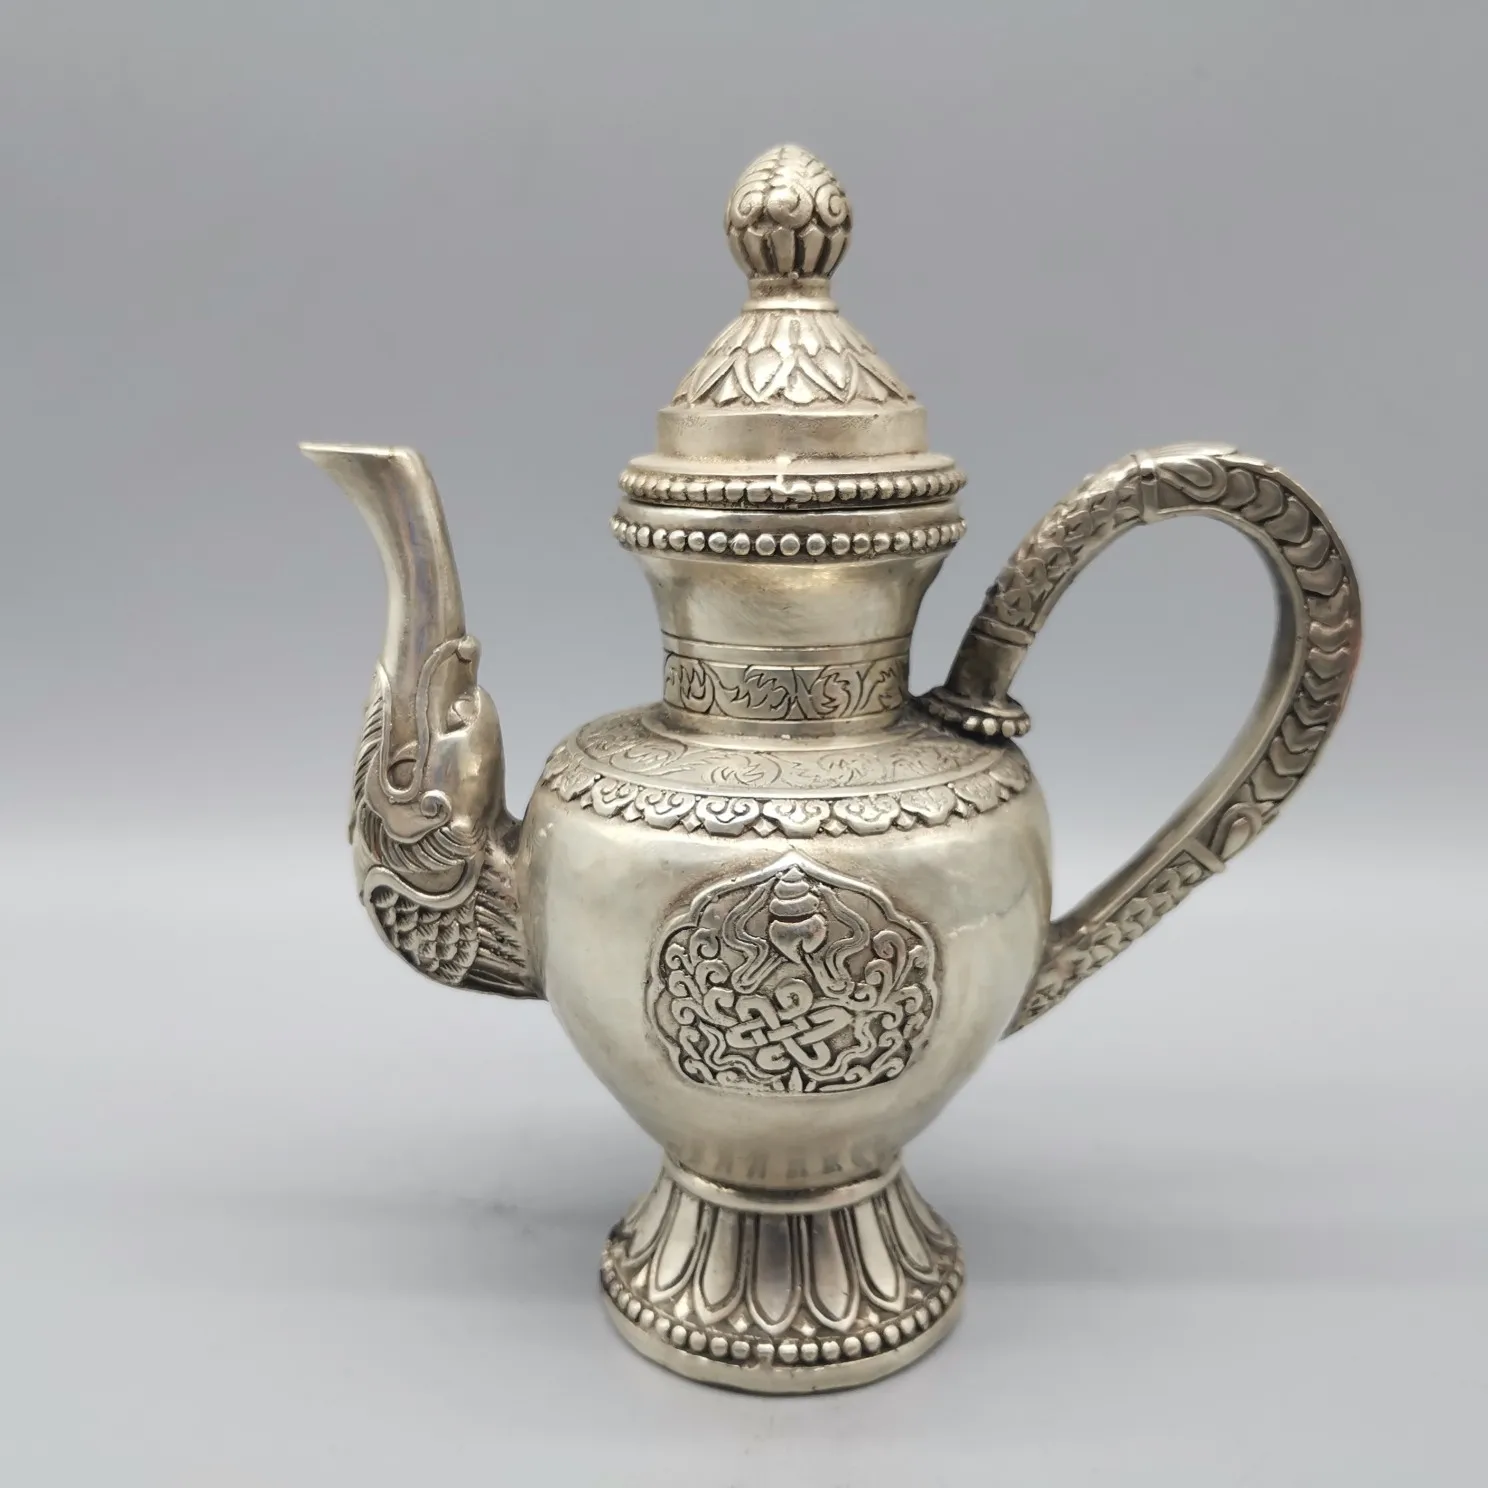 

Китайская бронзовая резьба, тибетский серебряный чайник с драконом, статуя животного